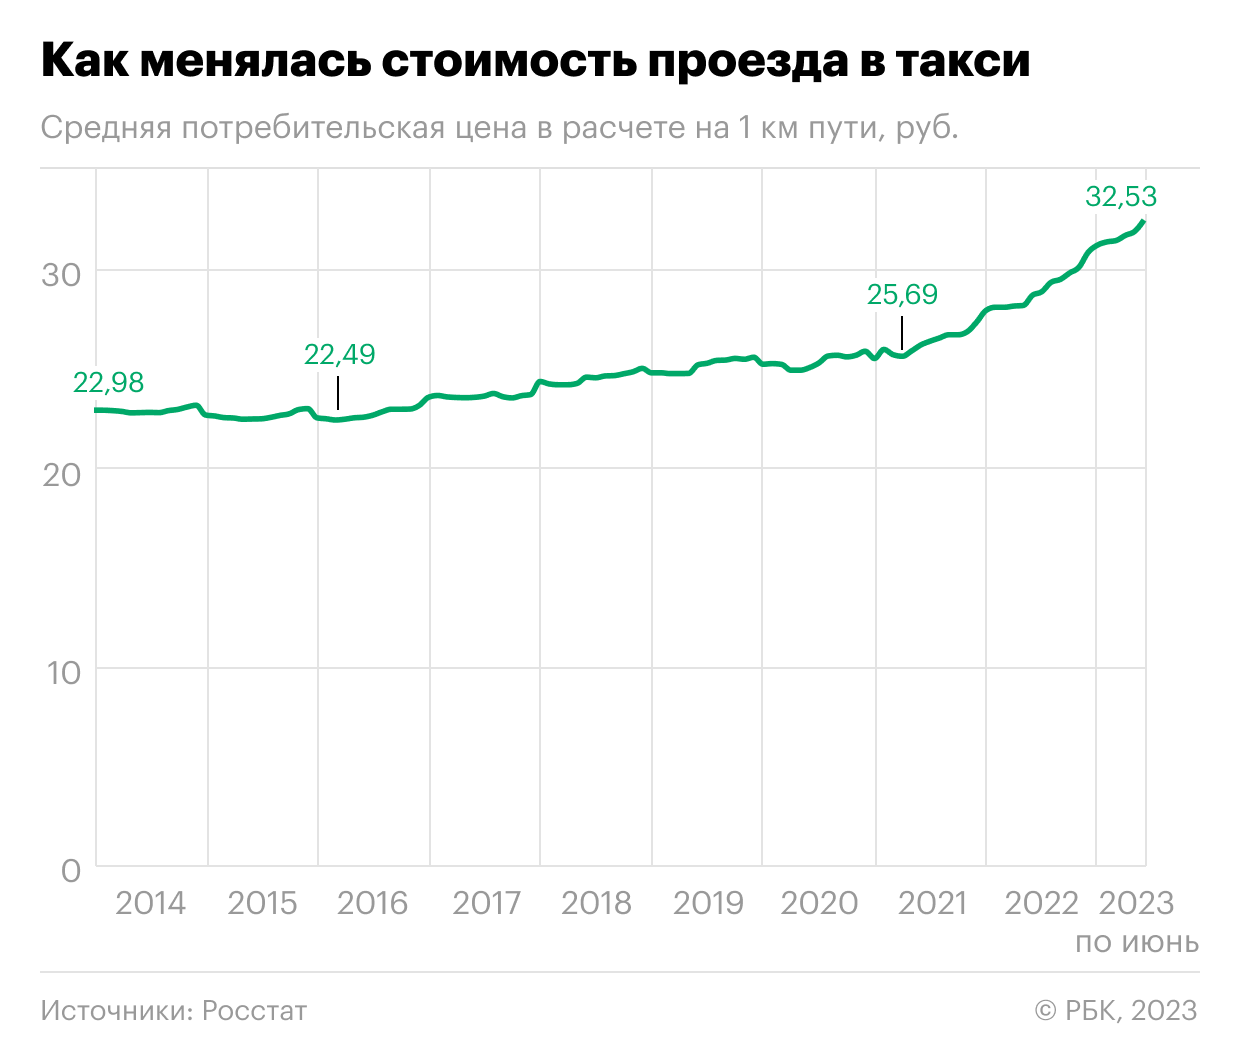 Как за десять лет поменялась цена поездки на такси в России. Инфографика